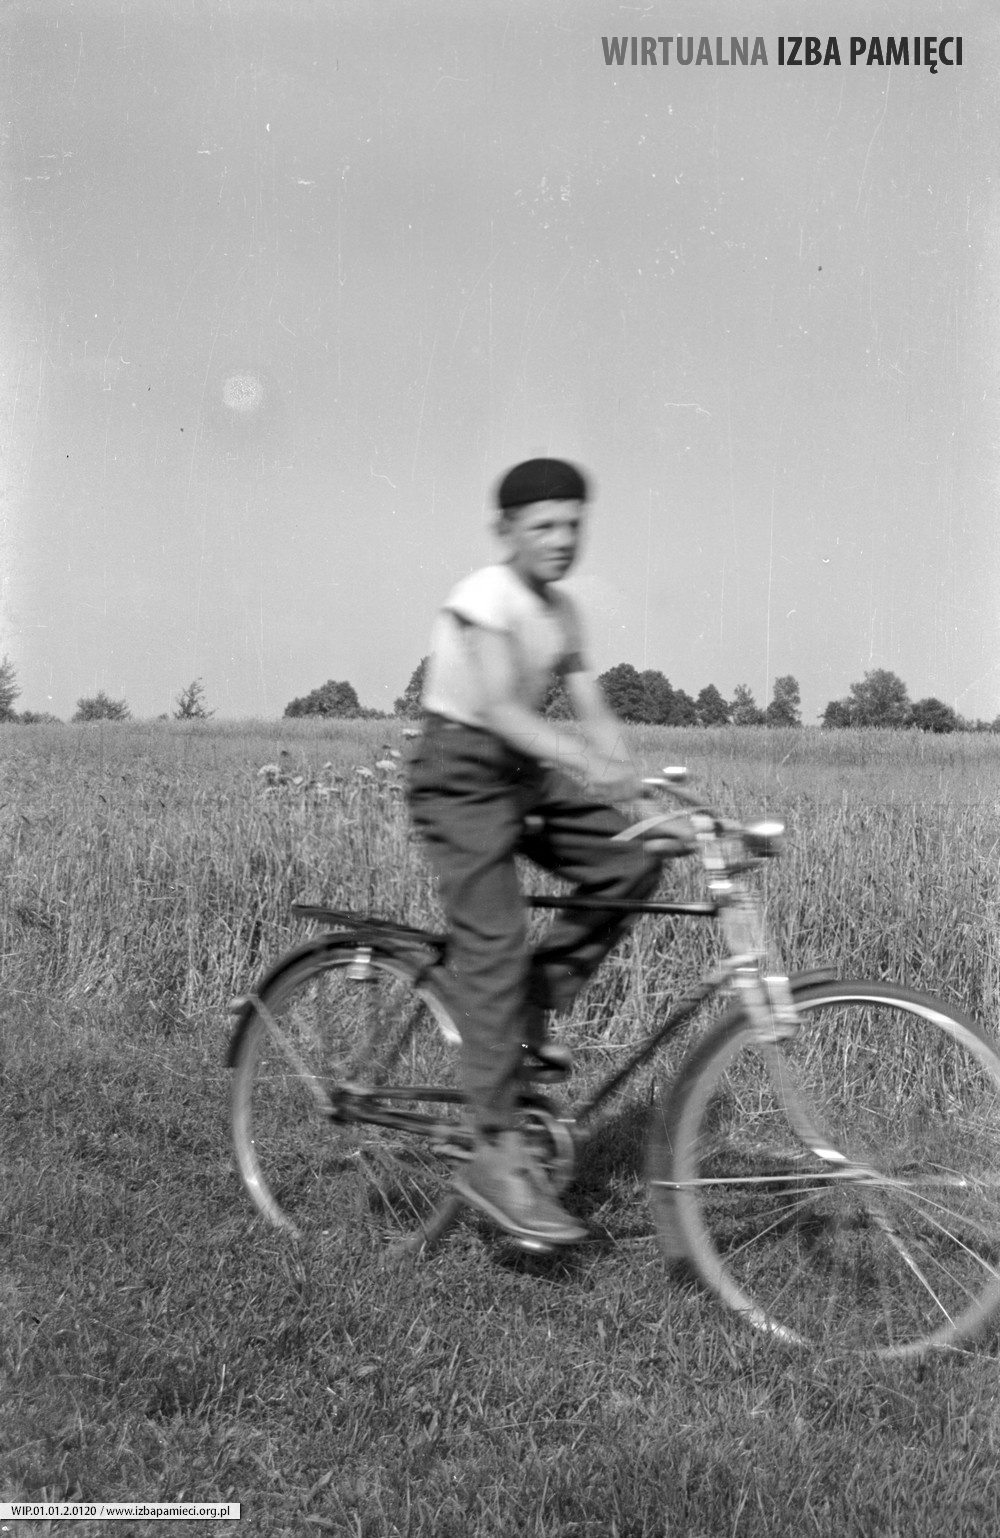 1955. Chłopiec na rowerze